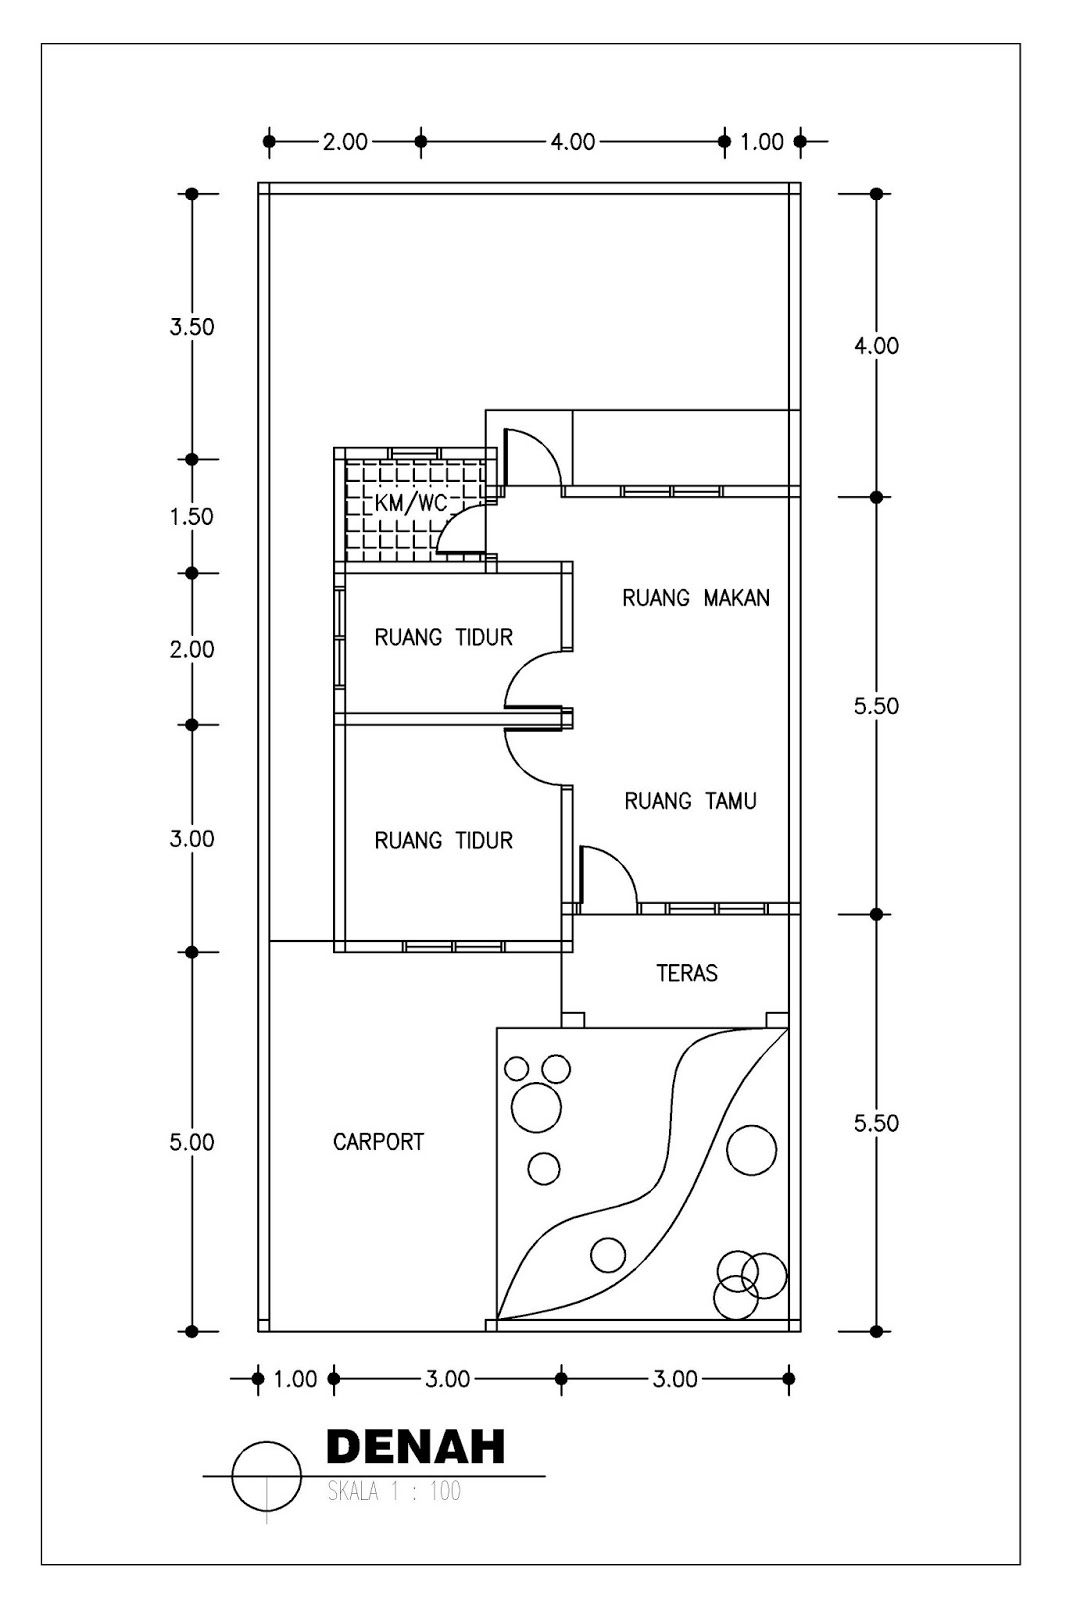 Gambar Desain Rumah Minimalis Type 36 1, 2 Lantai 2014 - Terbaru 2015